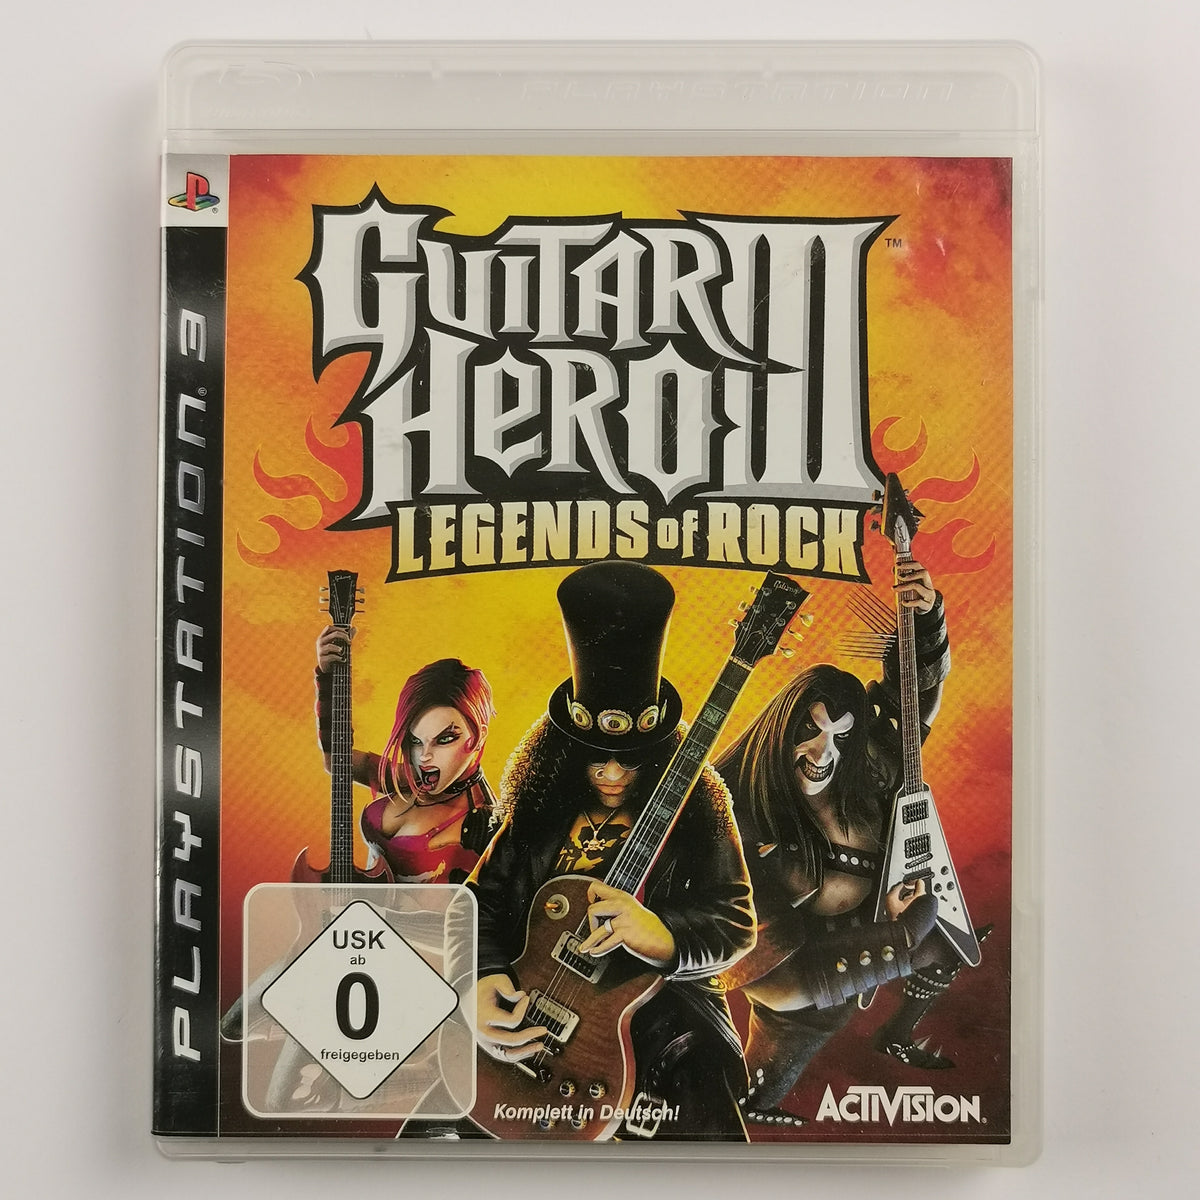 Guitar Hero III: Legends of Rock [PS3]